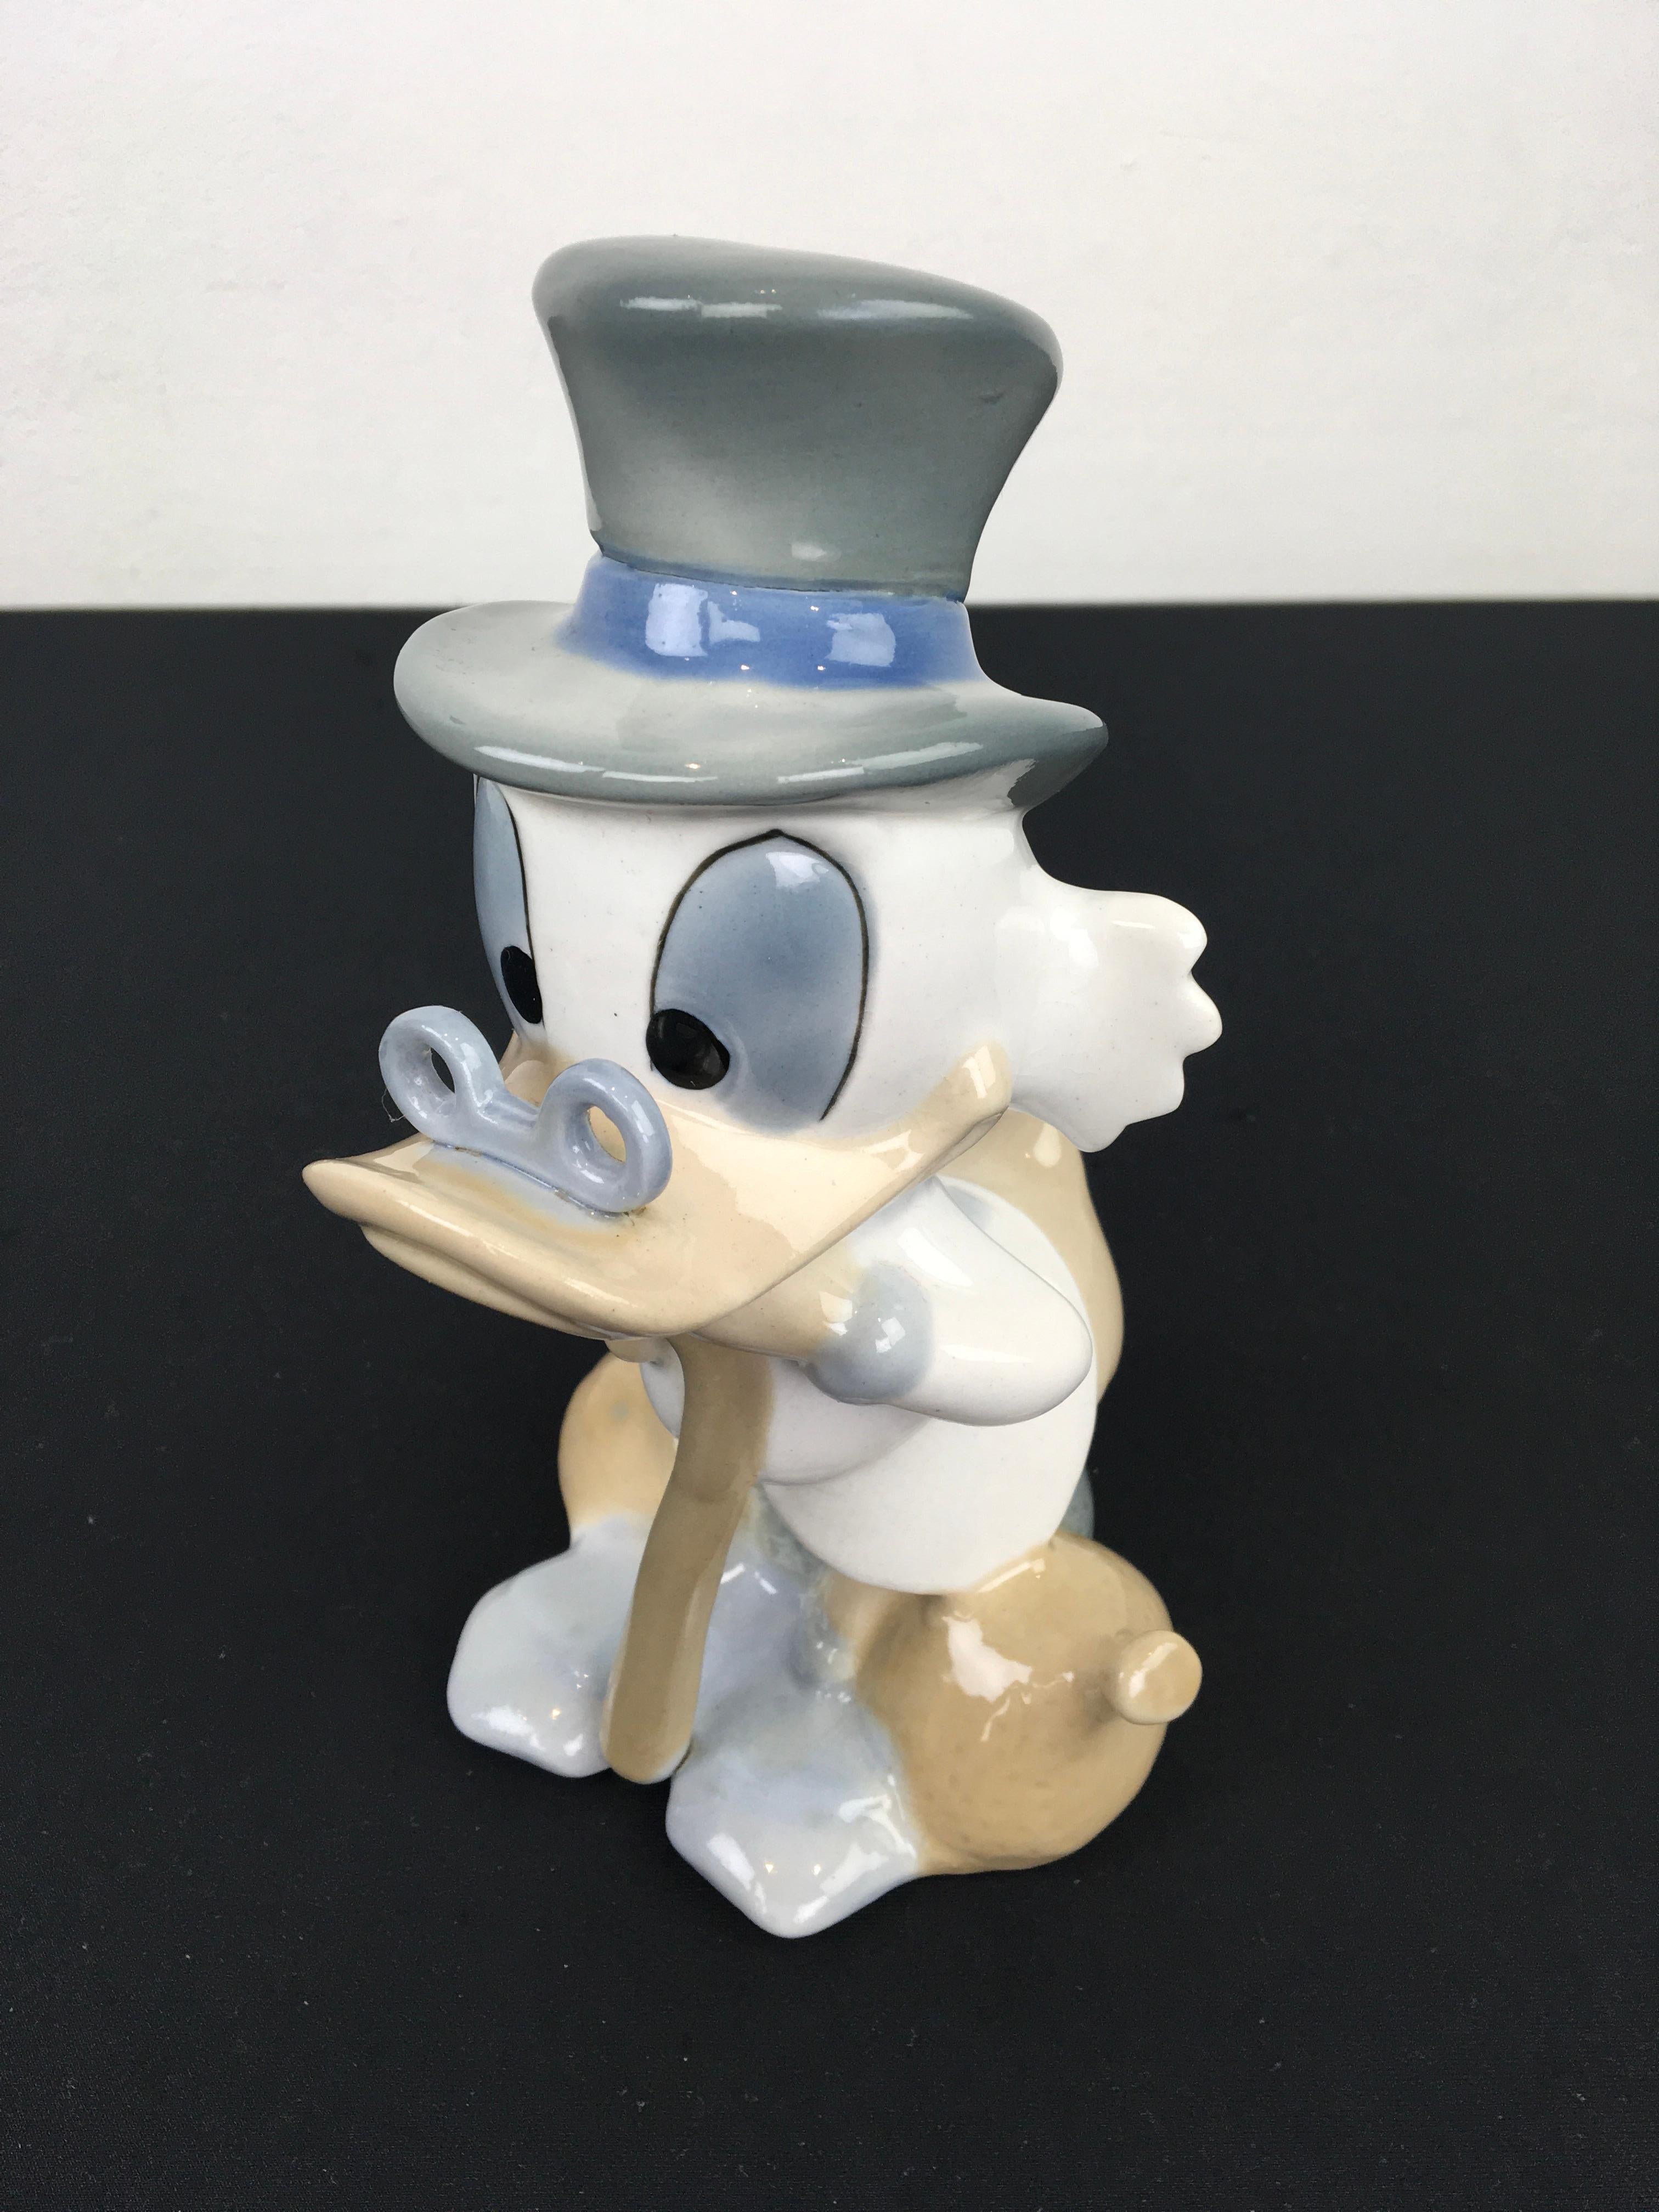 Porzellan Scrooge Mc Duck Figur. 
Ein Vintage glasierte Porzellan-Skulptur Made in Spain ca. 1960 - 1980. 
Hat Briefmarken unter. 
Disney-Figur - Dagobert Mc Duck  - Dagobert Duck - Donald Duck. 
In schönen Farben blau - beige und weiß mit dem